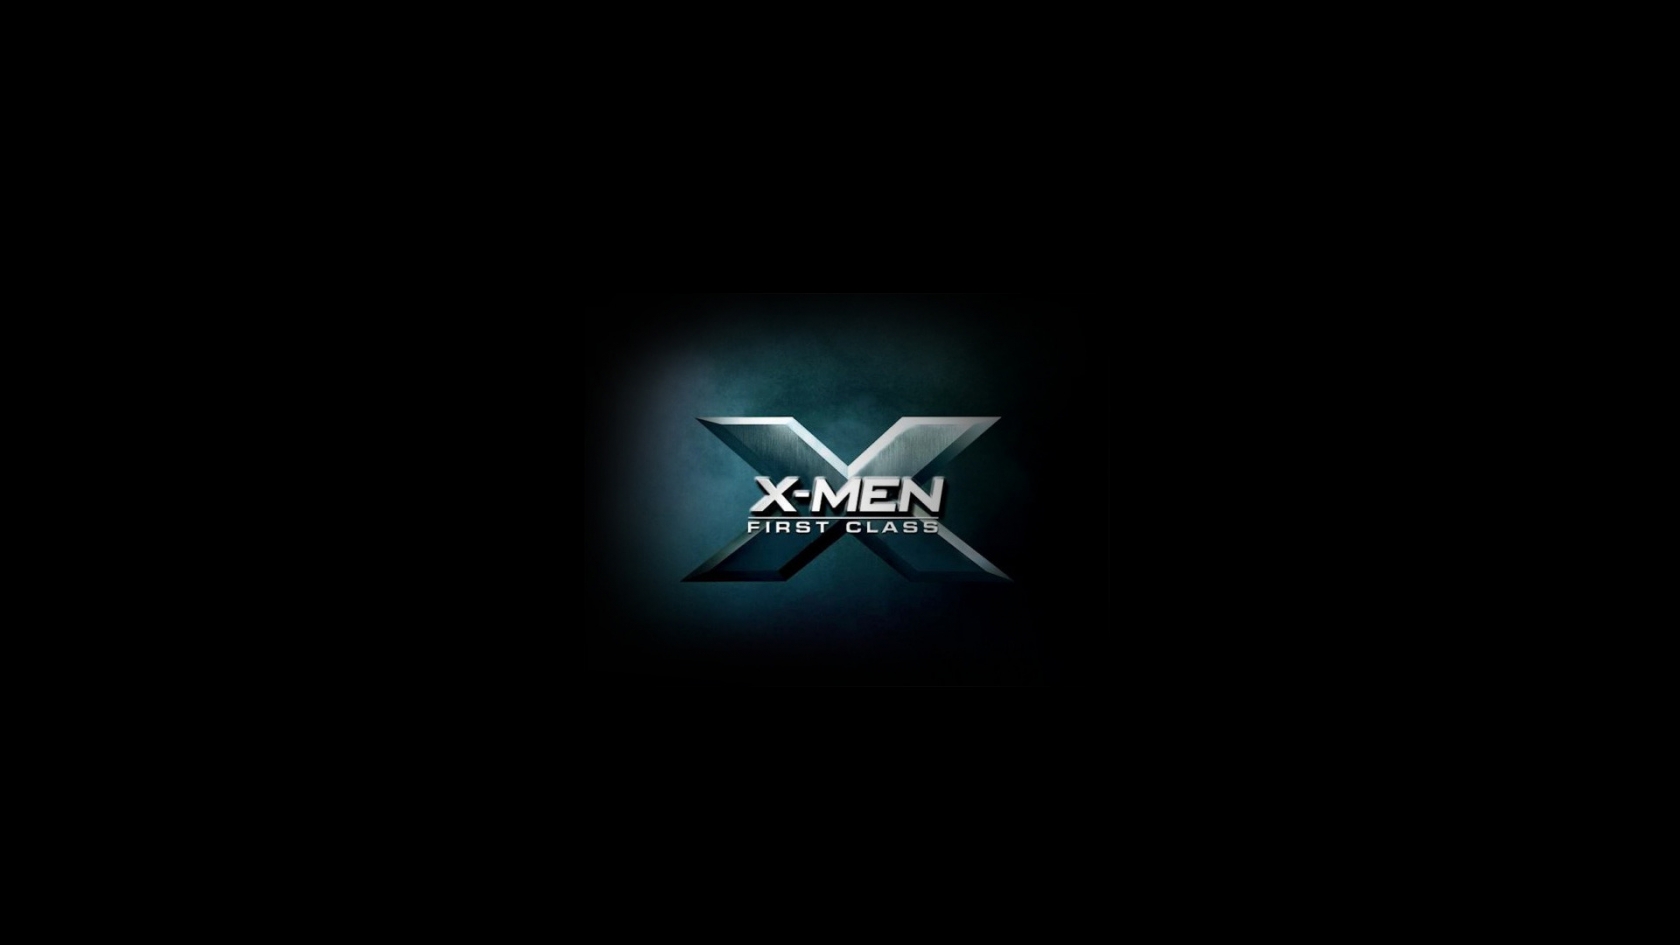 X Men First Class 2011 for 1680 x 945 HDTV resolution